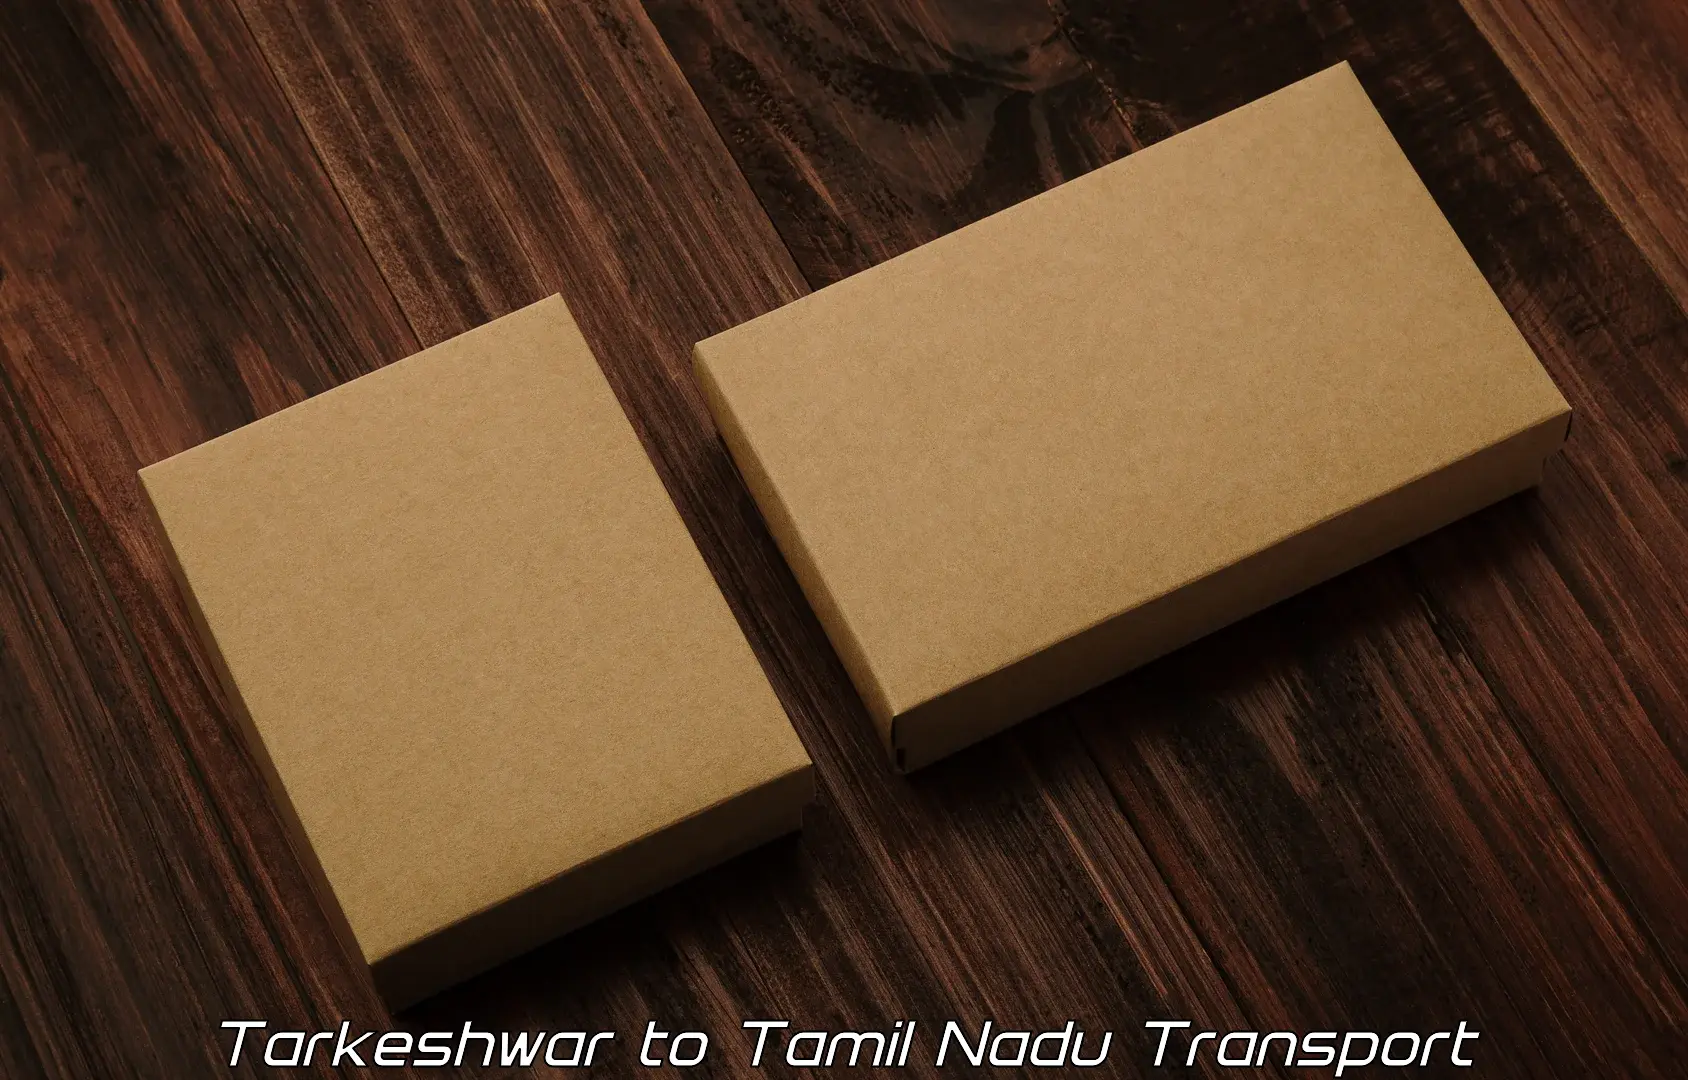 Cycle transportation service Tarkeshwar to Thuckalay